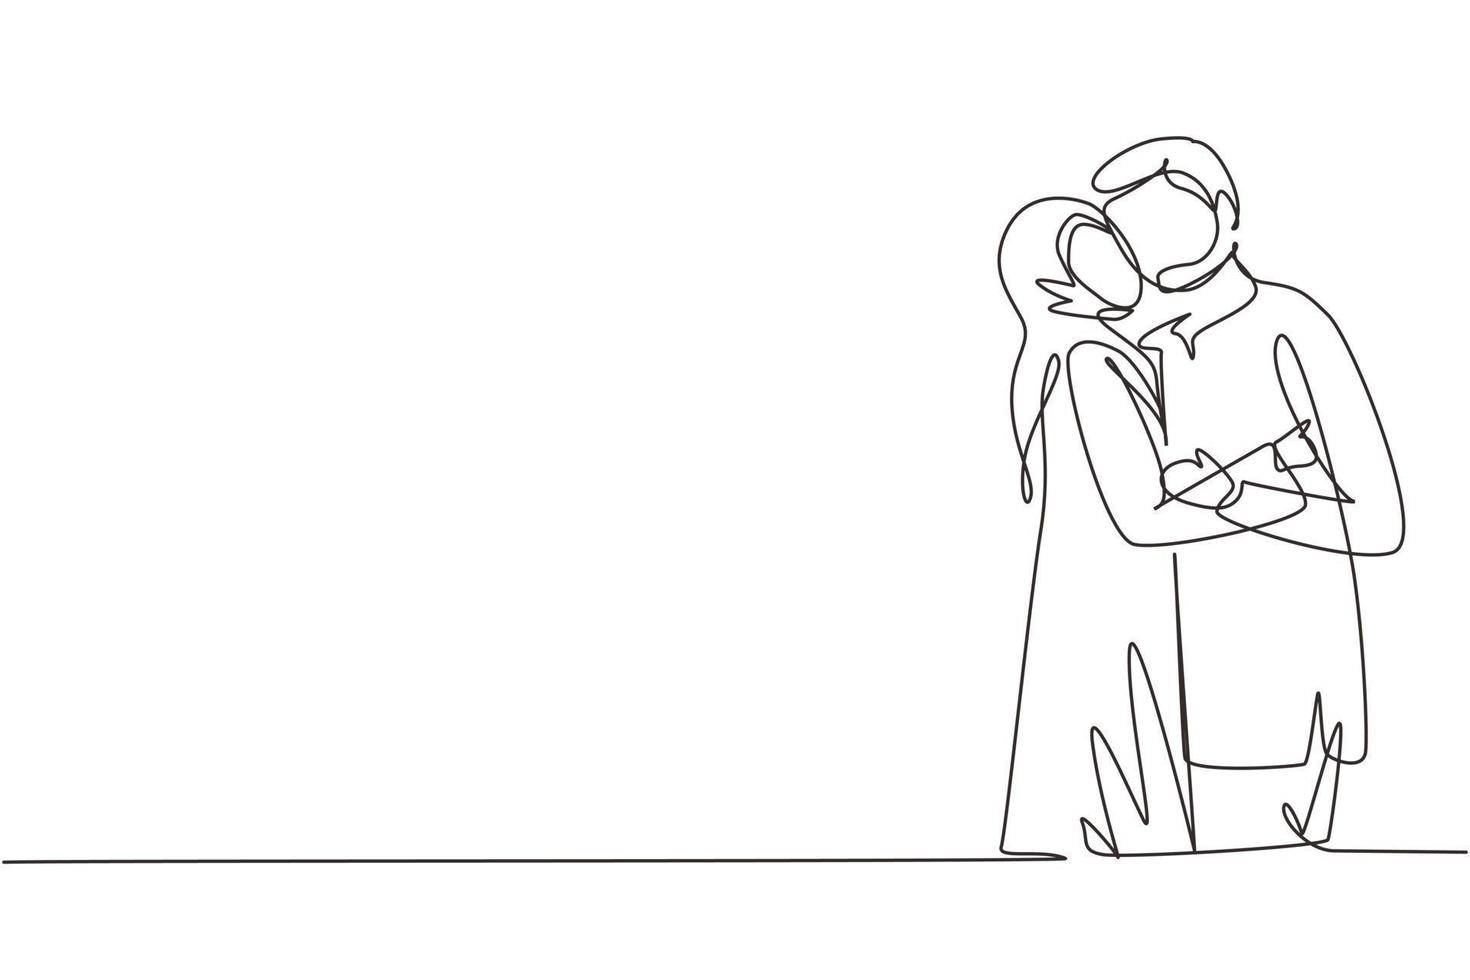 fortlaufende einzeilige zeichnung von arabischen jungen und mädchen, die sich lieben und küssen. Liebhaber des jungen Paares küssen sich. glücklicher mann und frau, die hochzeitstag feiern. einzeiliges zeichnen design vektorgrafik illustration vektor